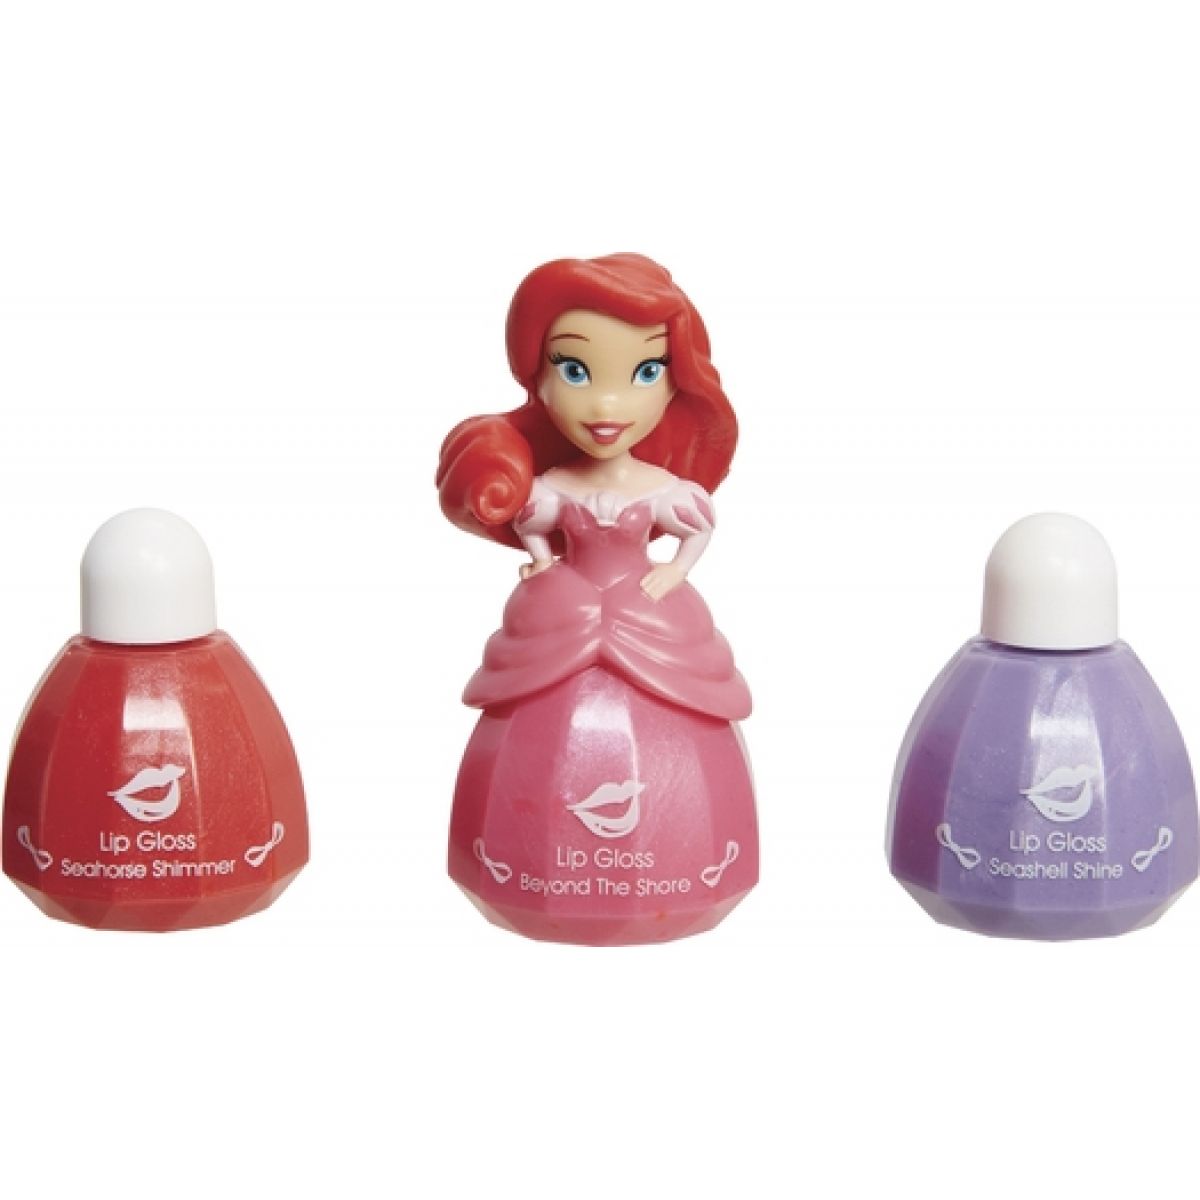 Disney Princess Little Kingdom Make up pro princezny 1 - Ariel a lesky na rty